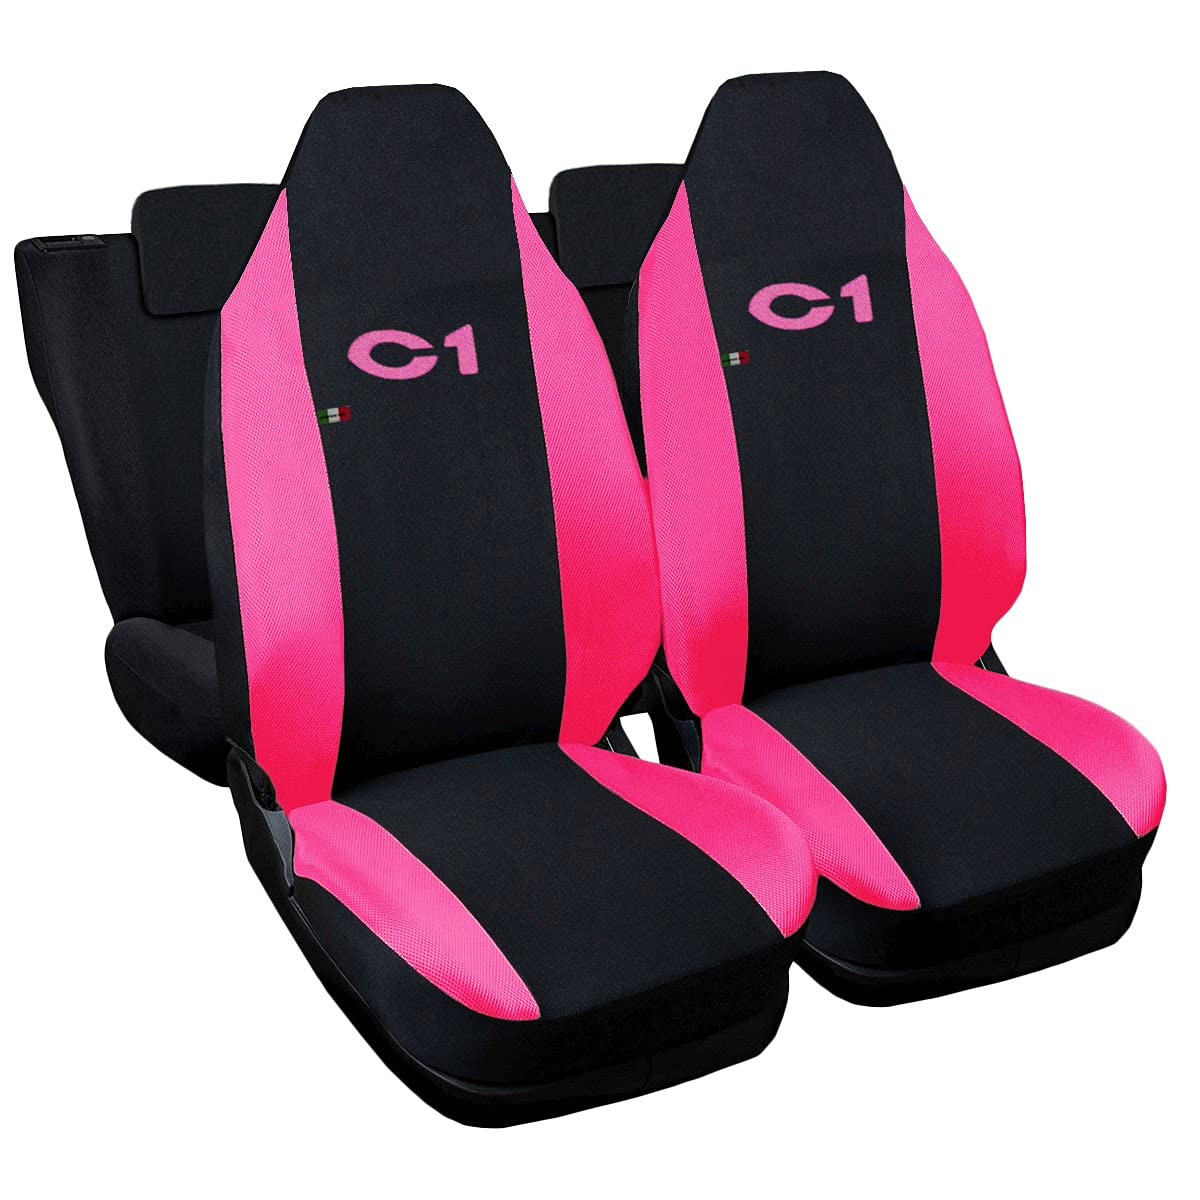 Lupex Shop Citroen C1 zweifarbige Sitzüberzüge - Frau Zusammenstellung von Lupex Shop